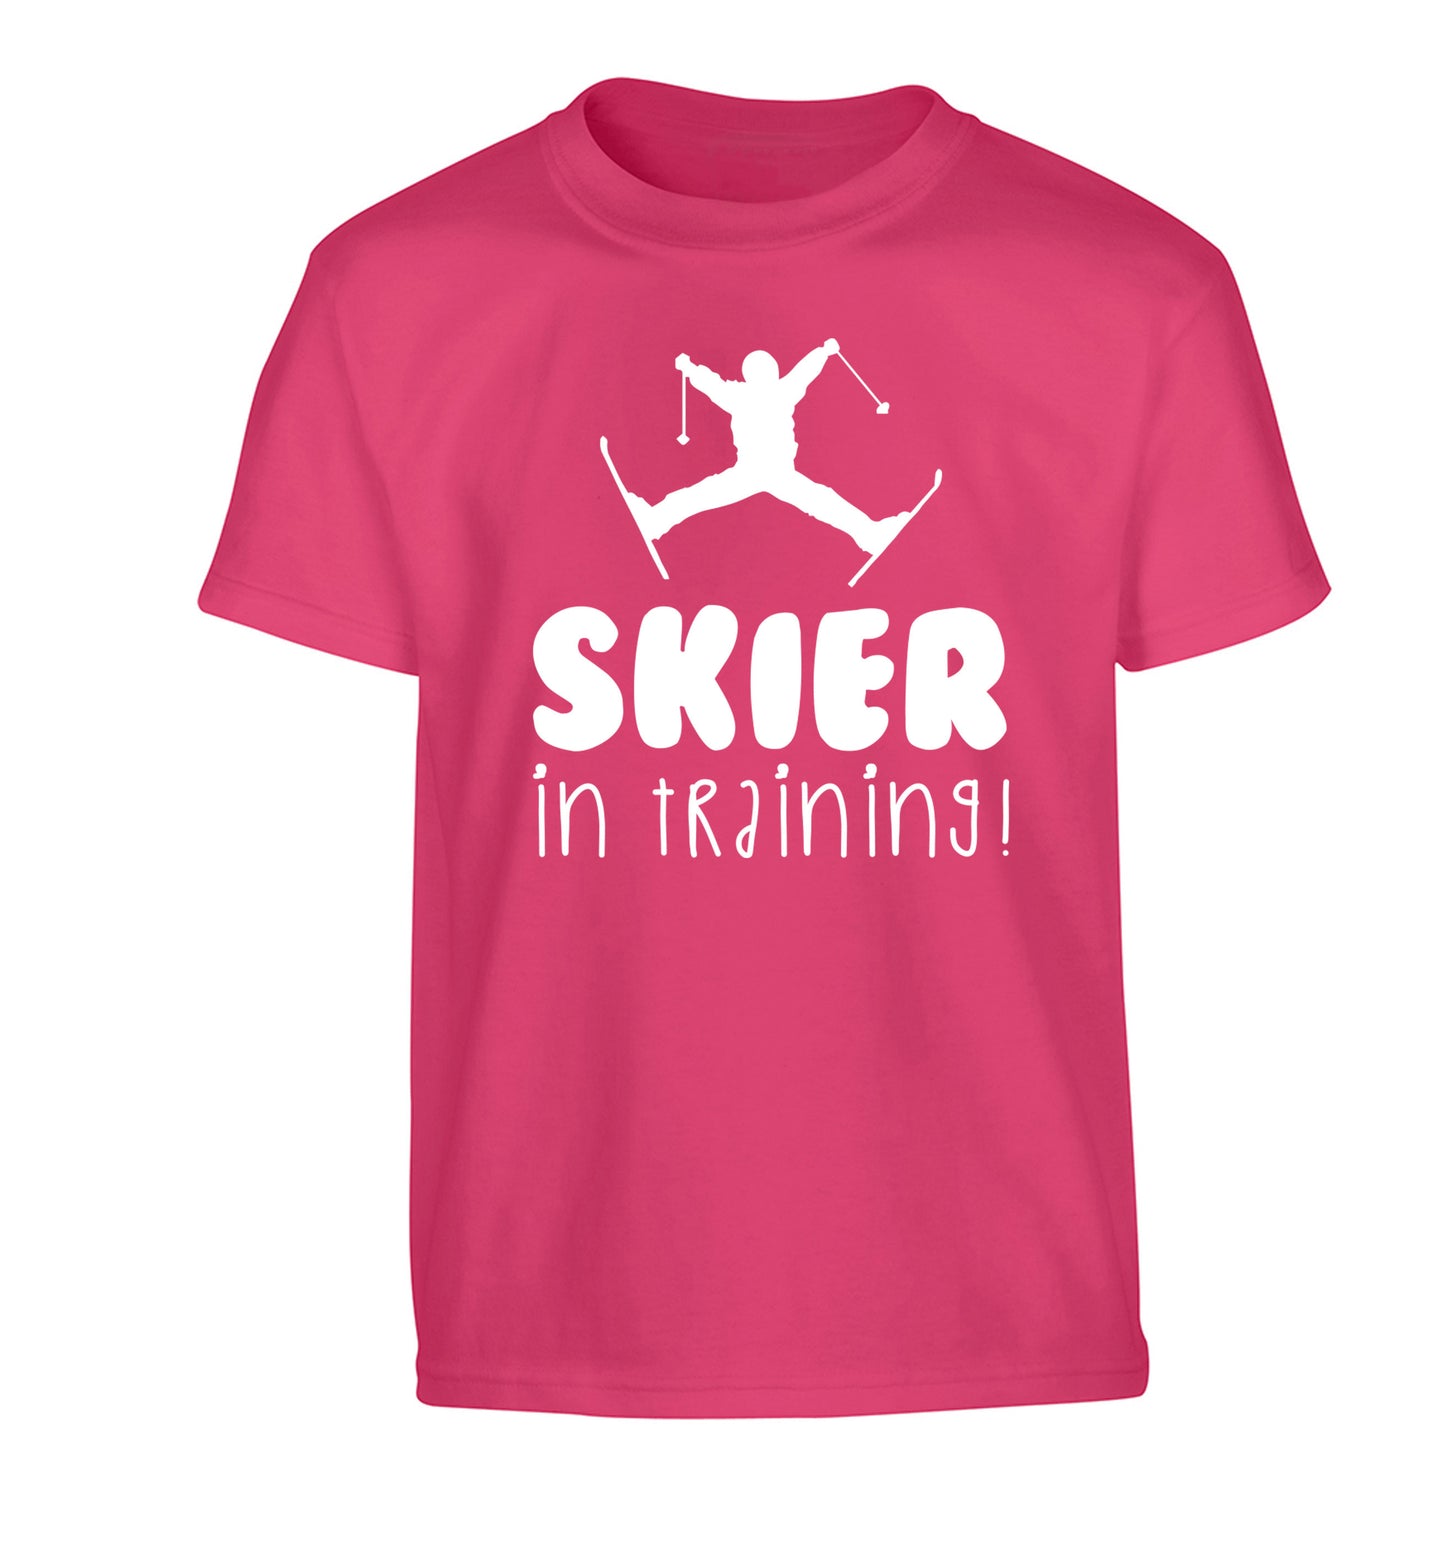 Skier in training Children's pink Tshirt 12-14 Years